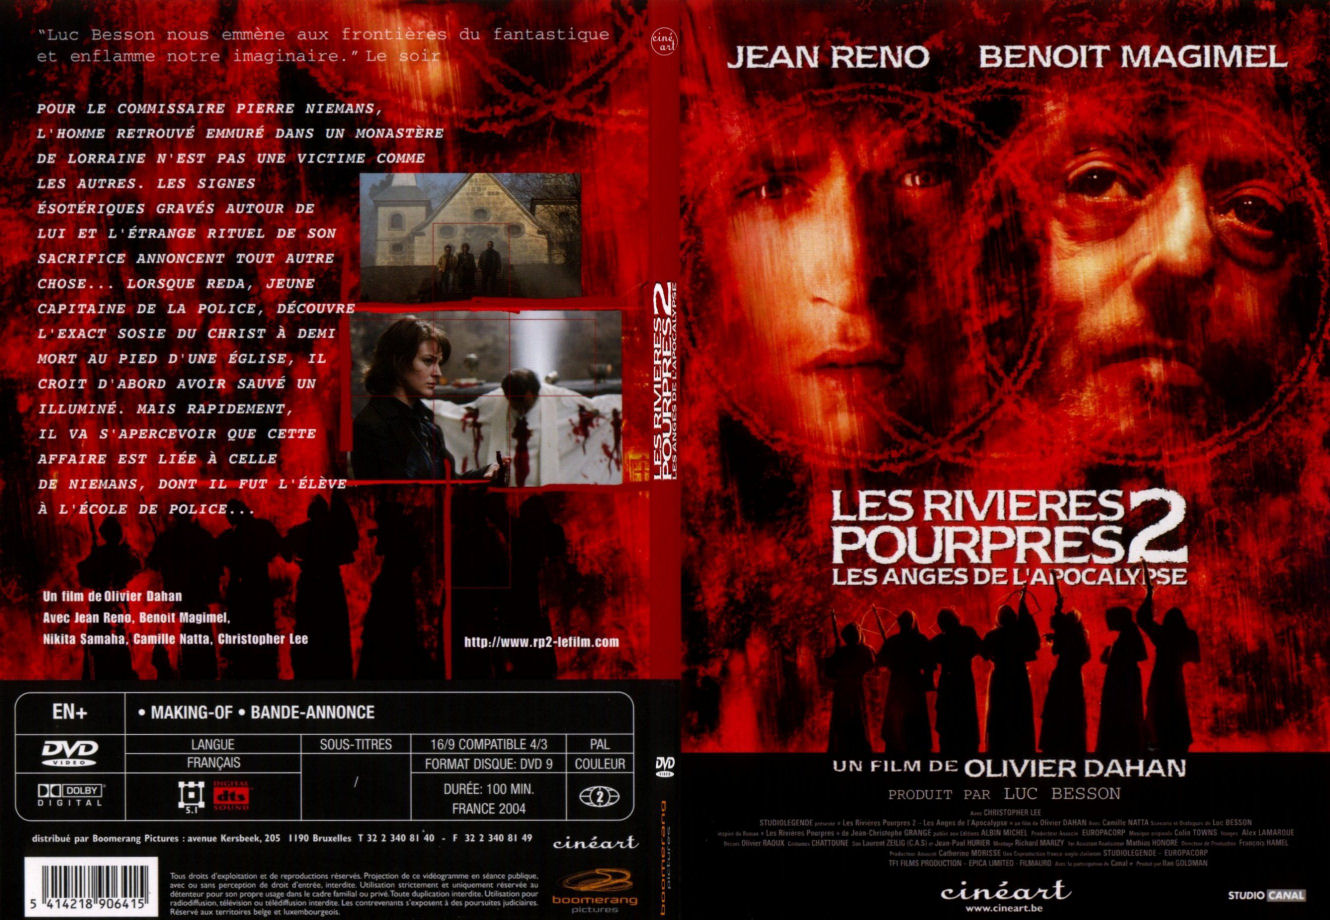 Jaquette DVD Les rivieres pourpres 2 - SLIM